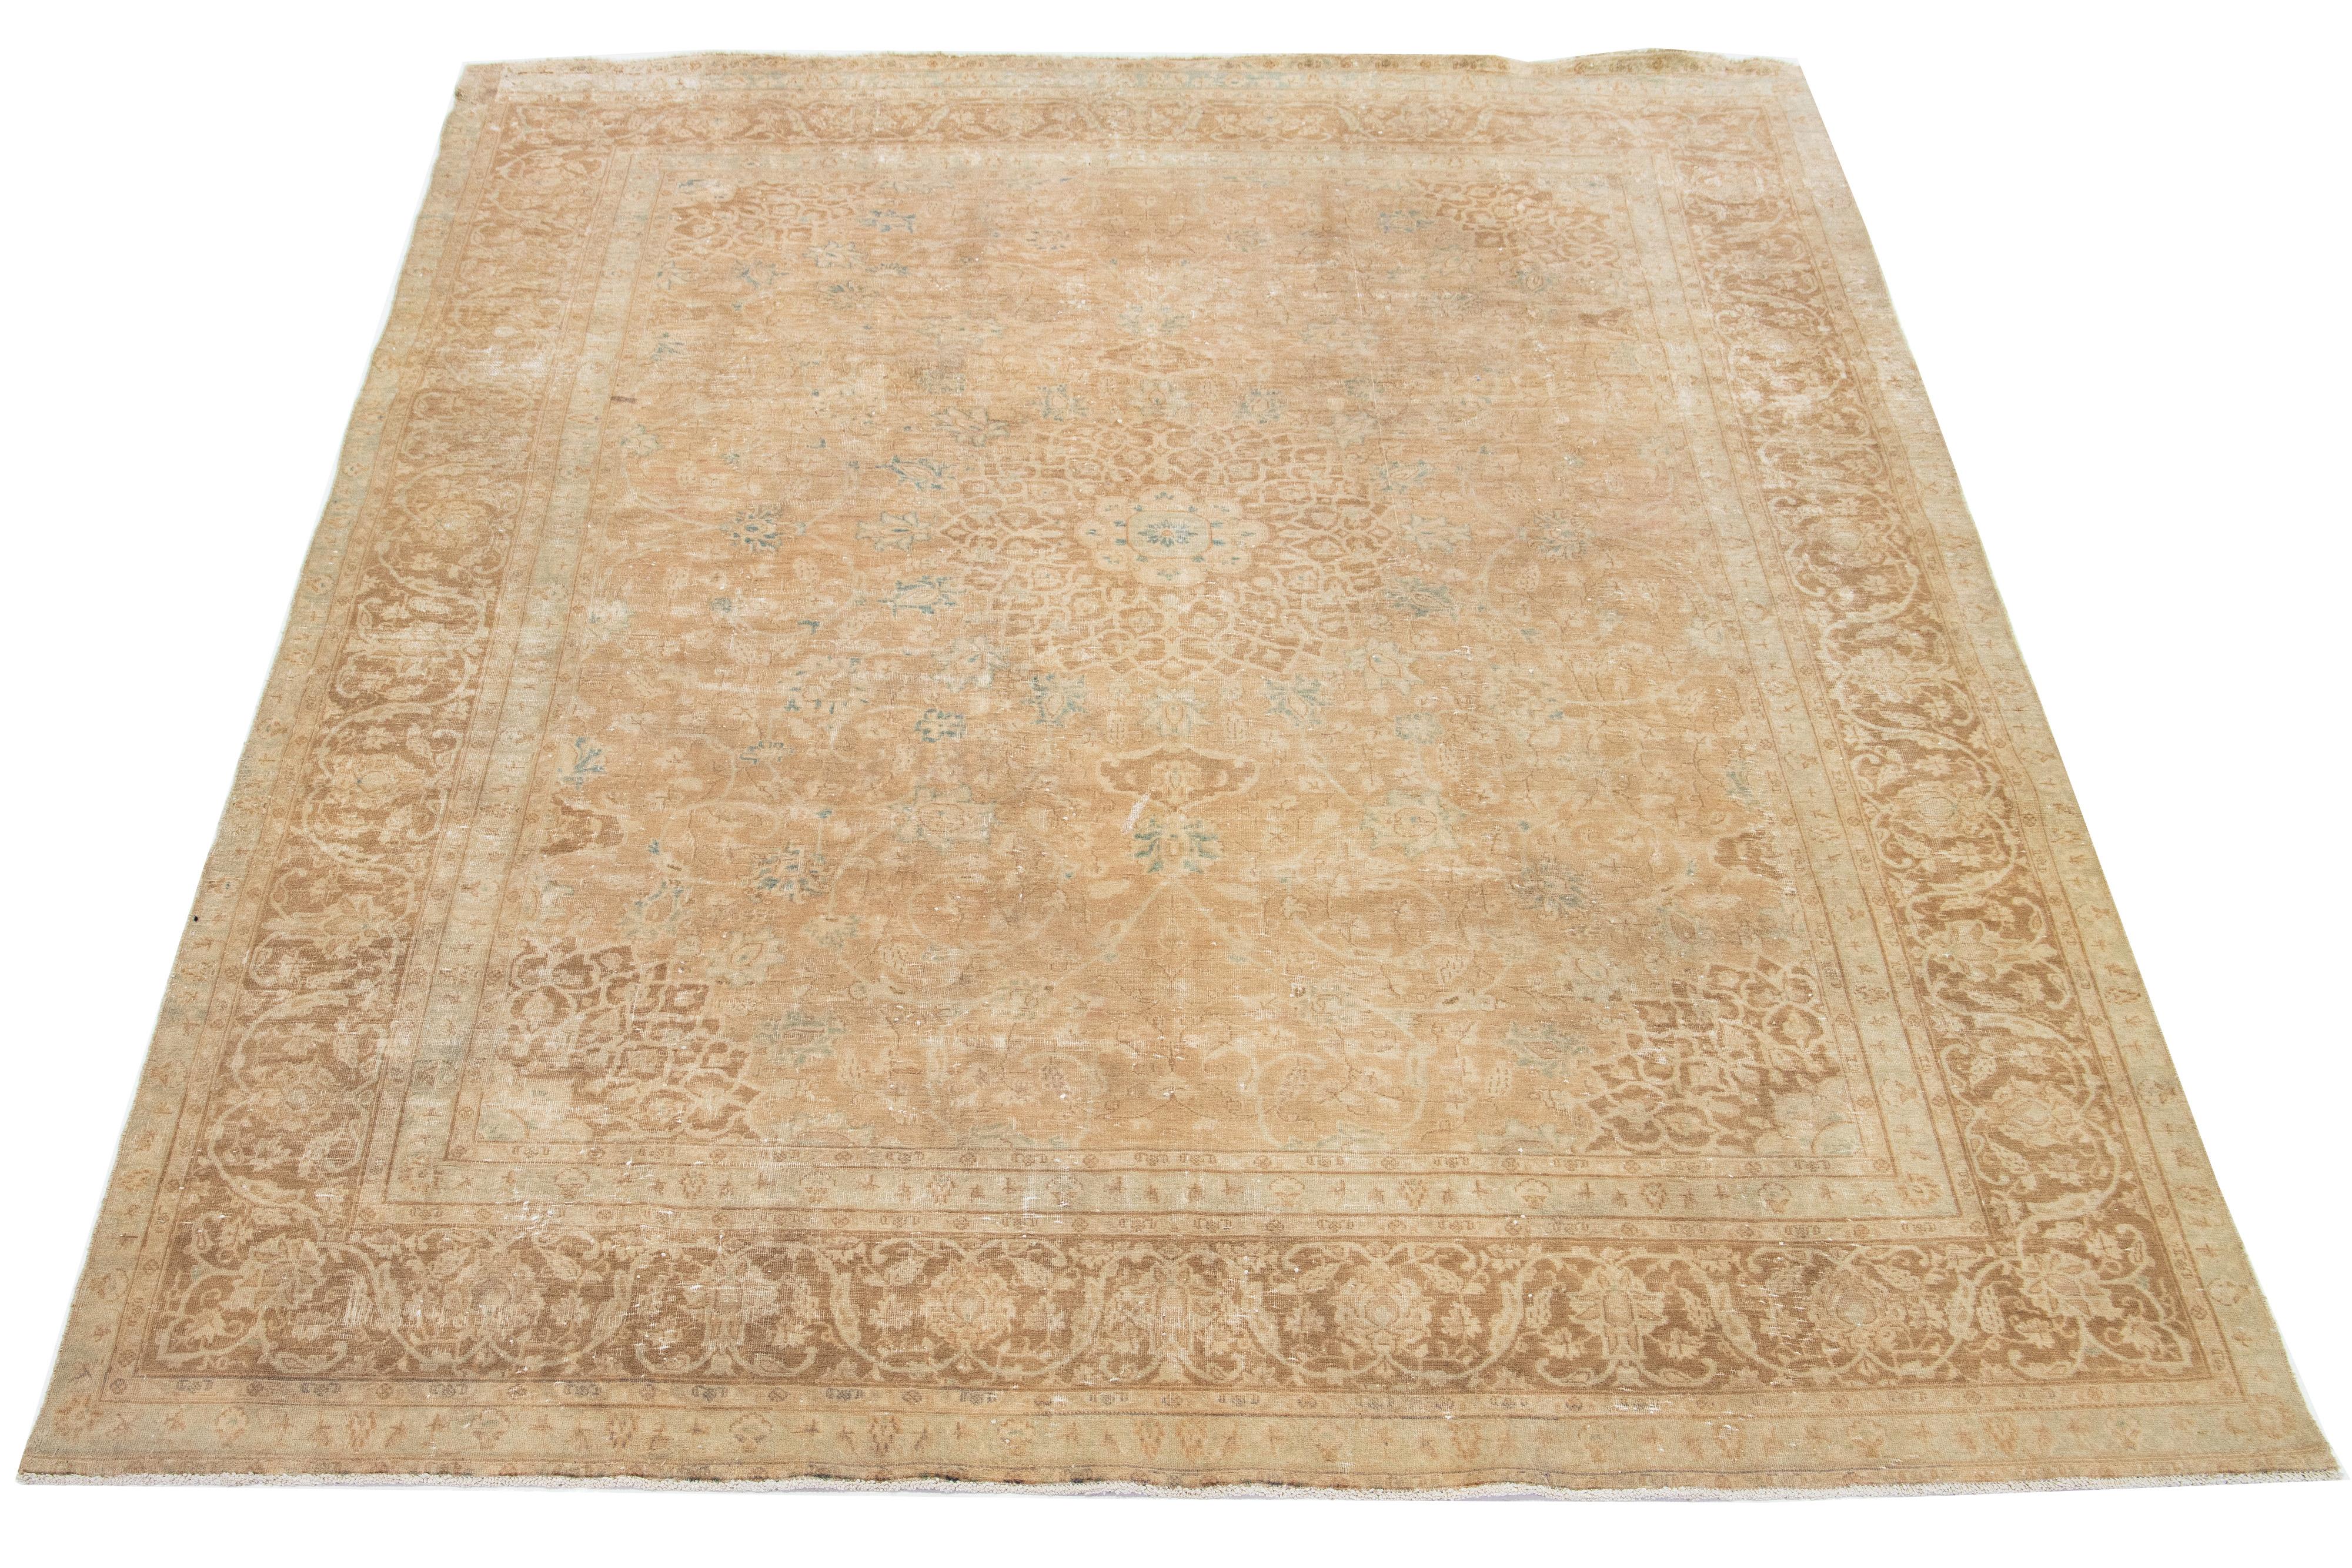  Ce tapis en laine persane présente un champ de couleur havane avec des accents bleus dans un motif de rosette classique. 

Ce tapis mesure 8'11